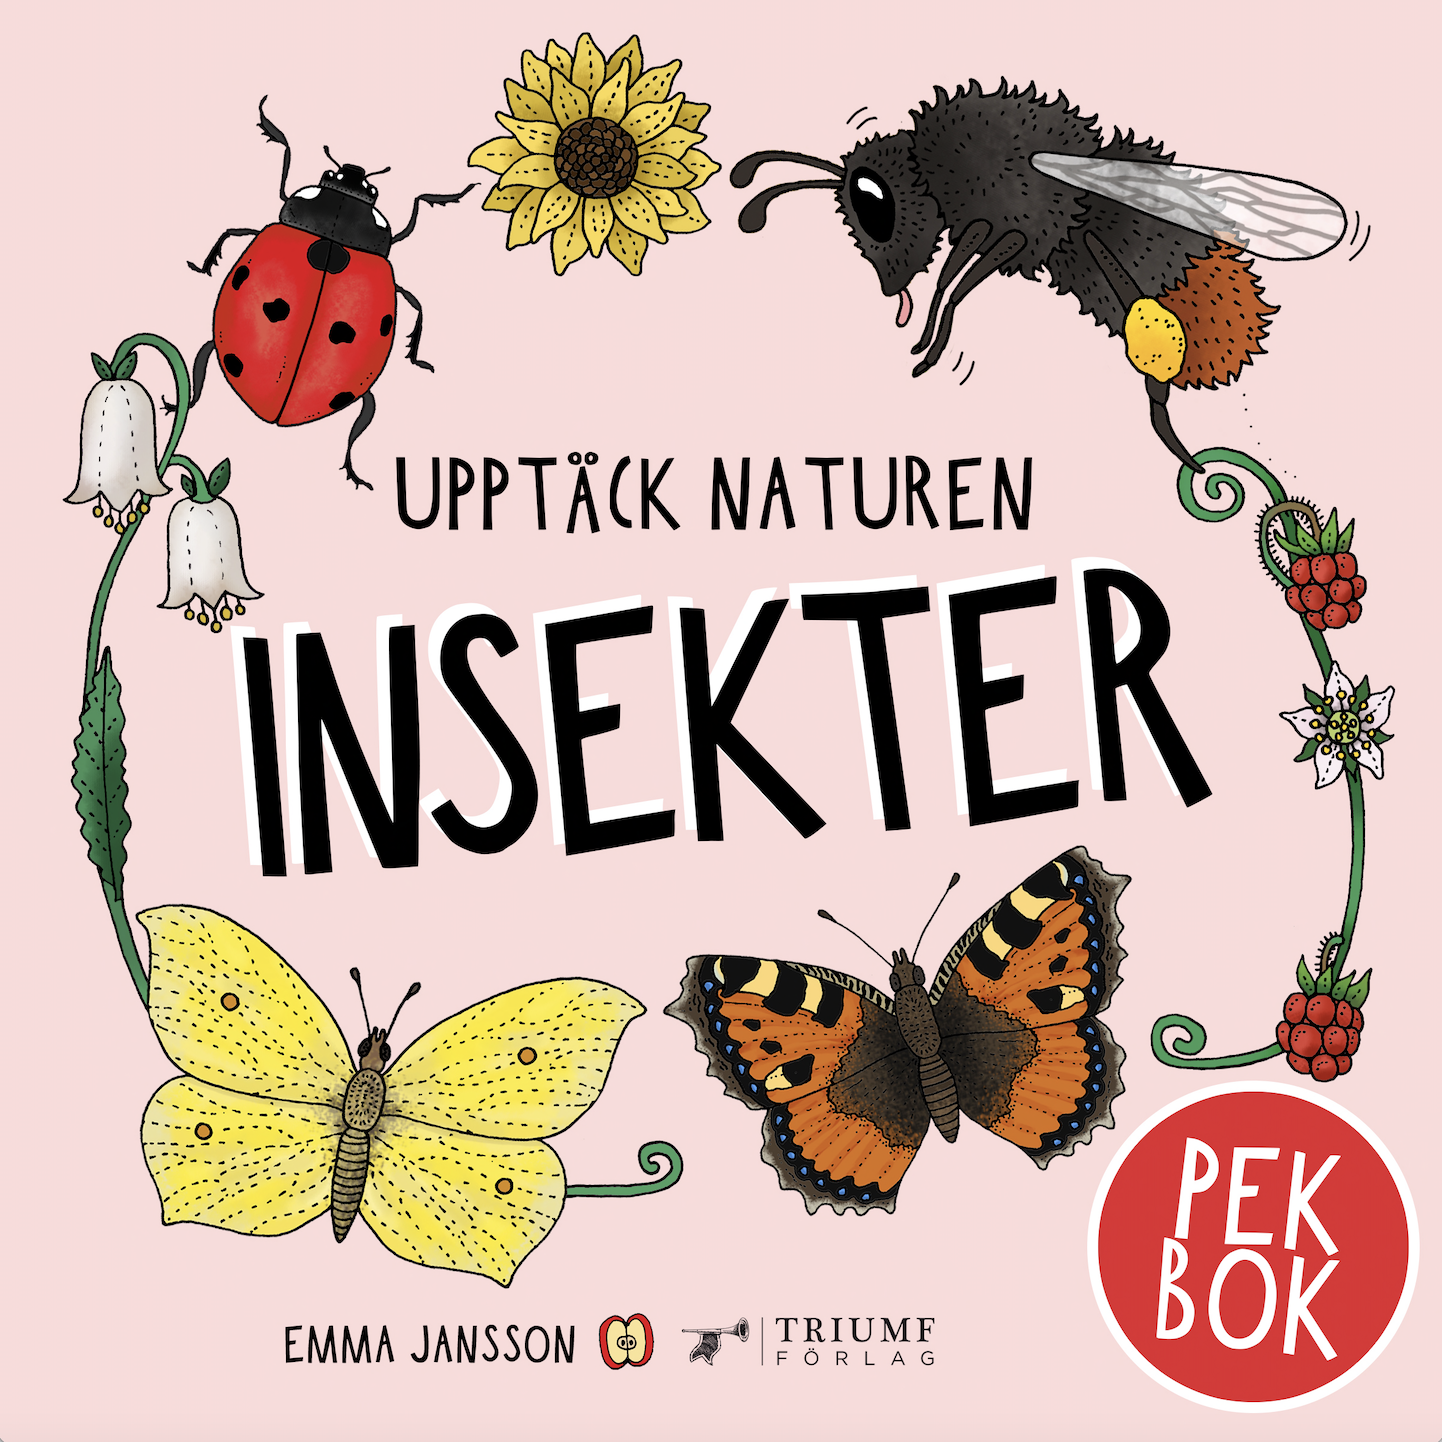 "Upptäck naturen insekter - pekbok" av Emma Jansson